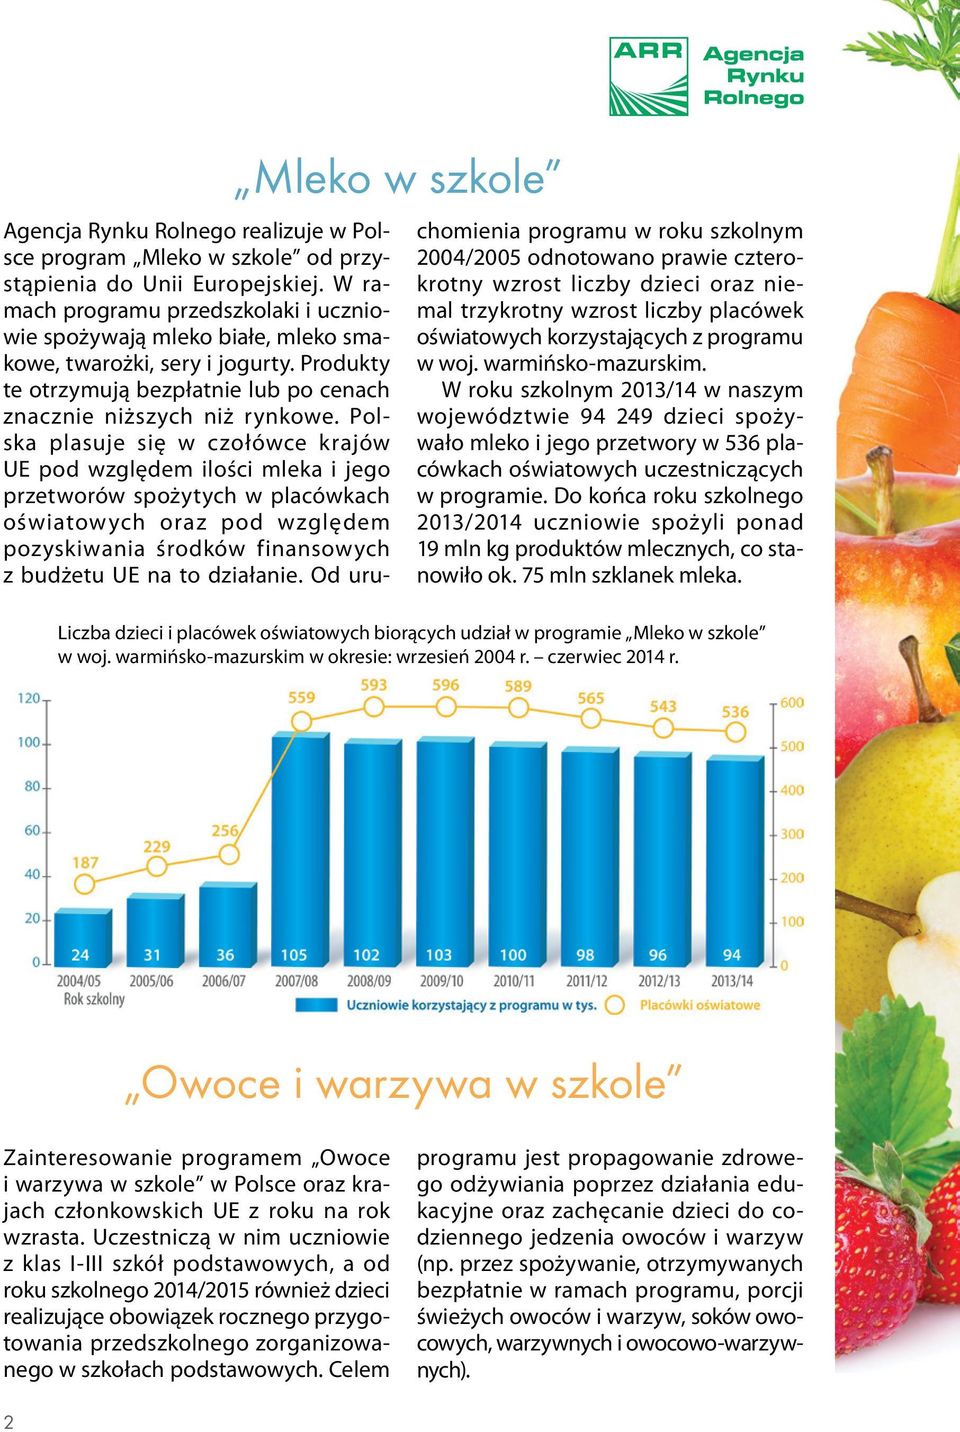 Polska plasuje się w czołówce krajów UE pod względem ilości mleka i jego przetworów spożytych w placówkach oświatowych oraz pod względem pozyskiwania środków finansowych z budżetu UE na to działanie.